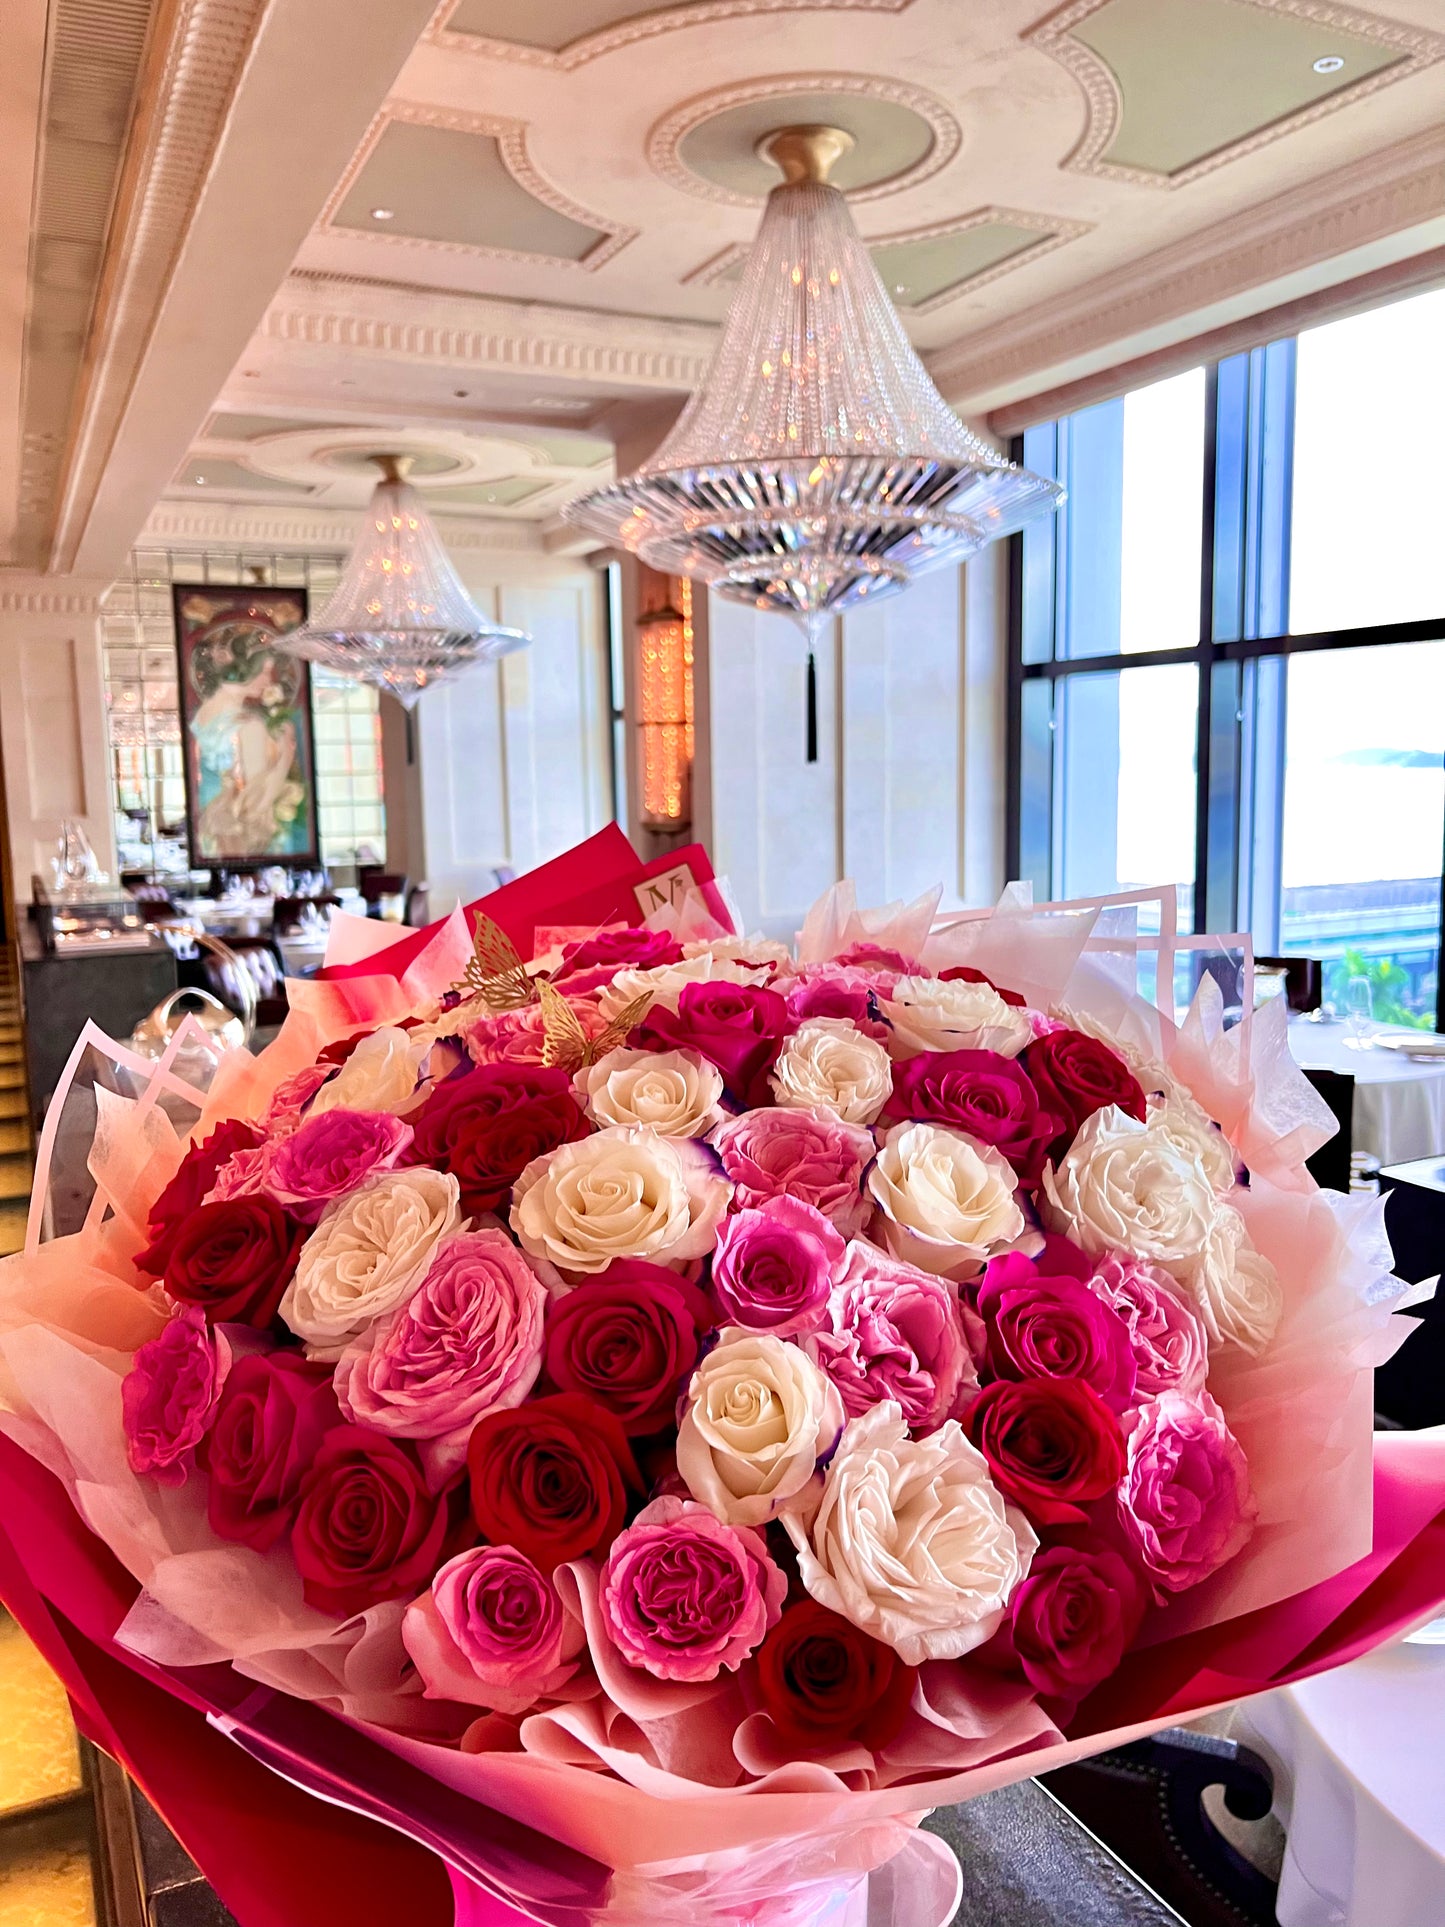 Premium Ecuadorian Roses Bouquet in Red Pink Mix